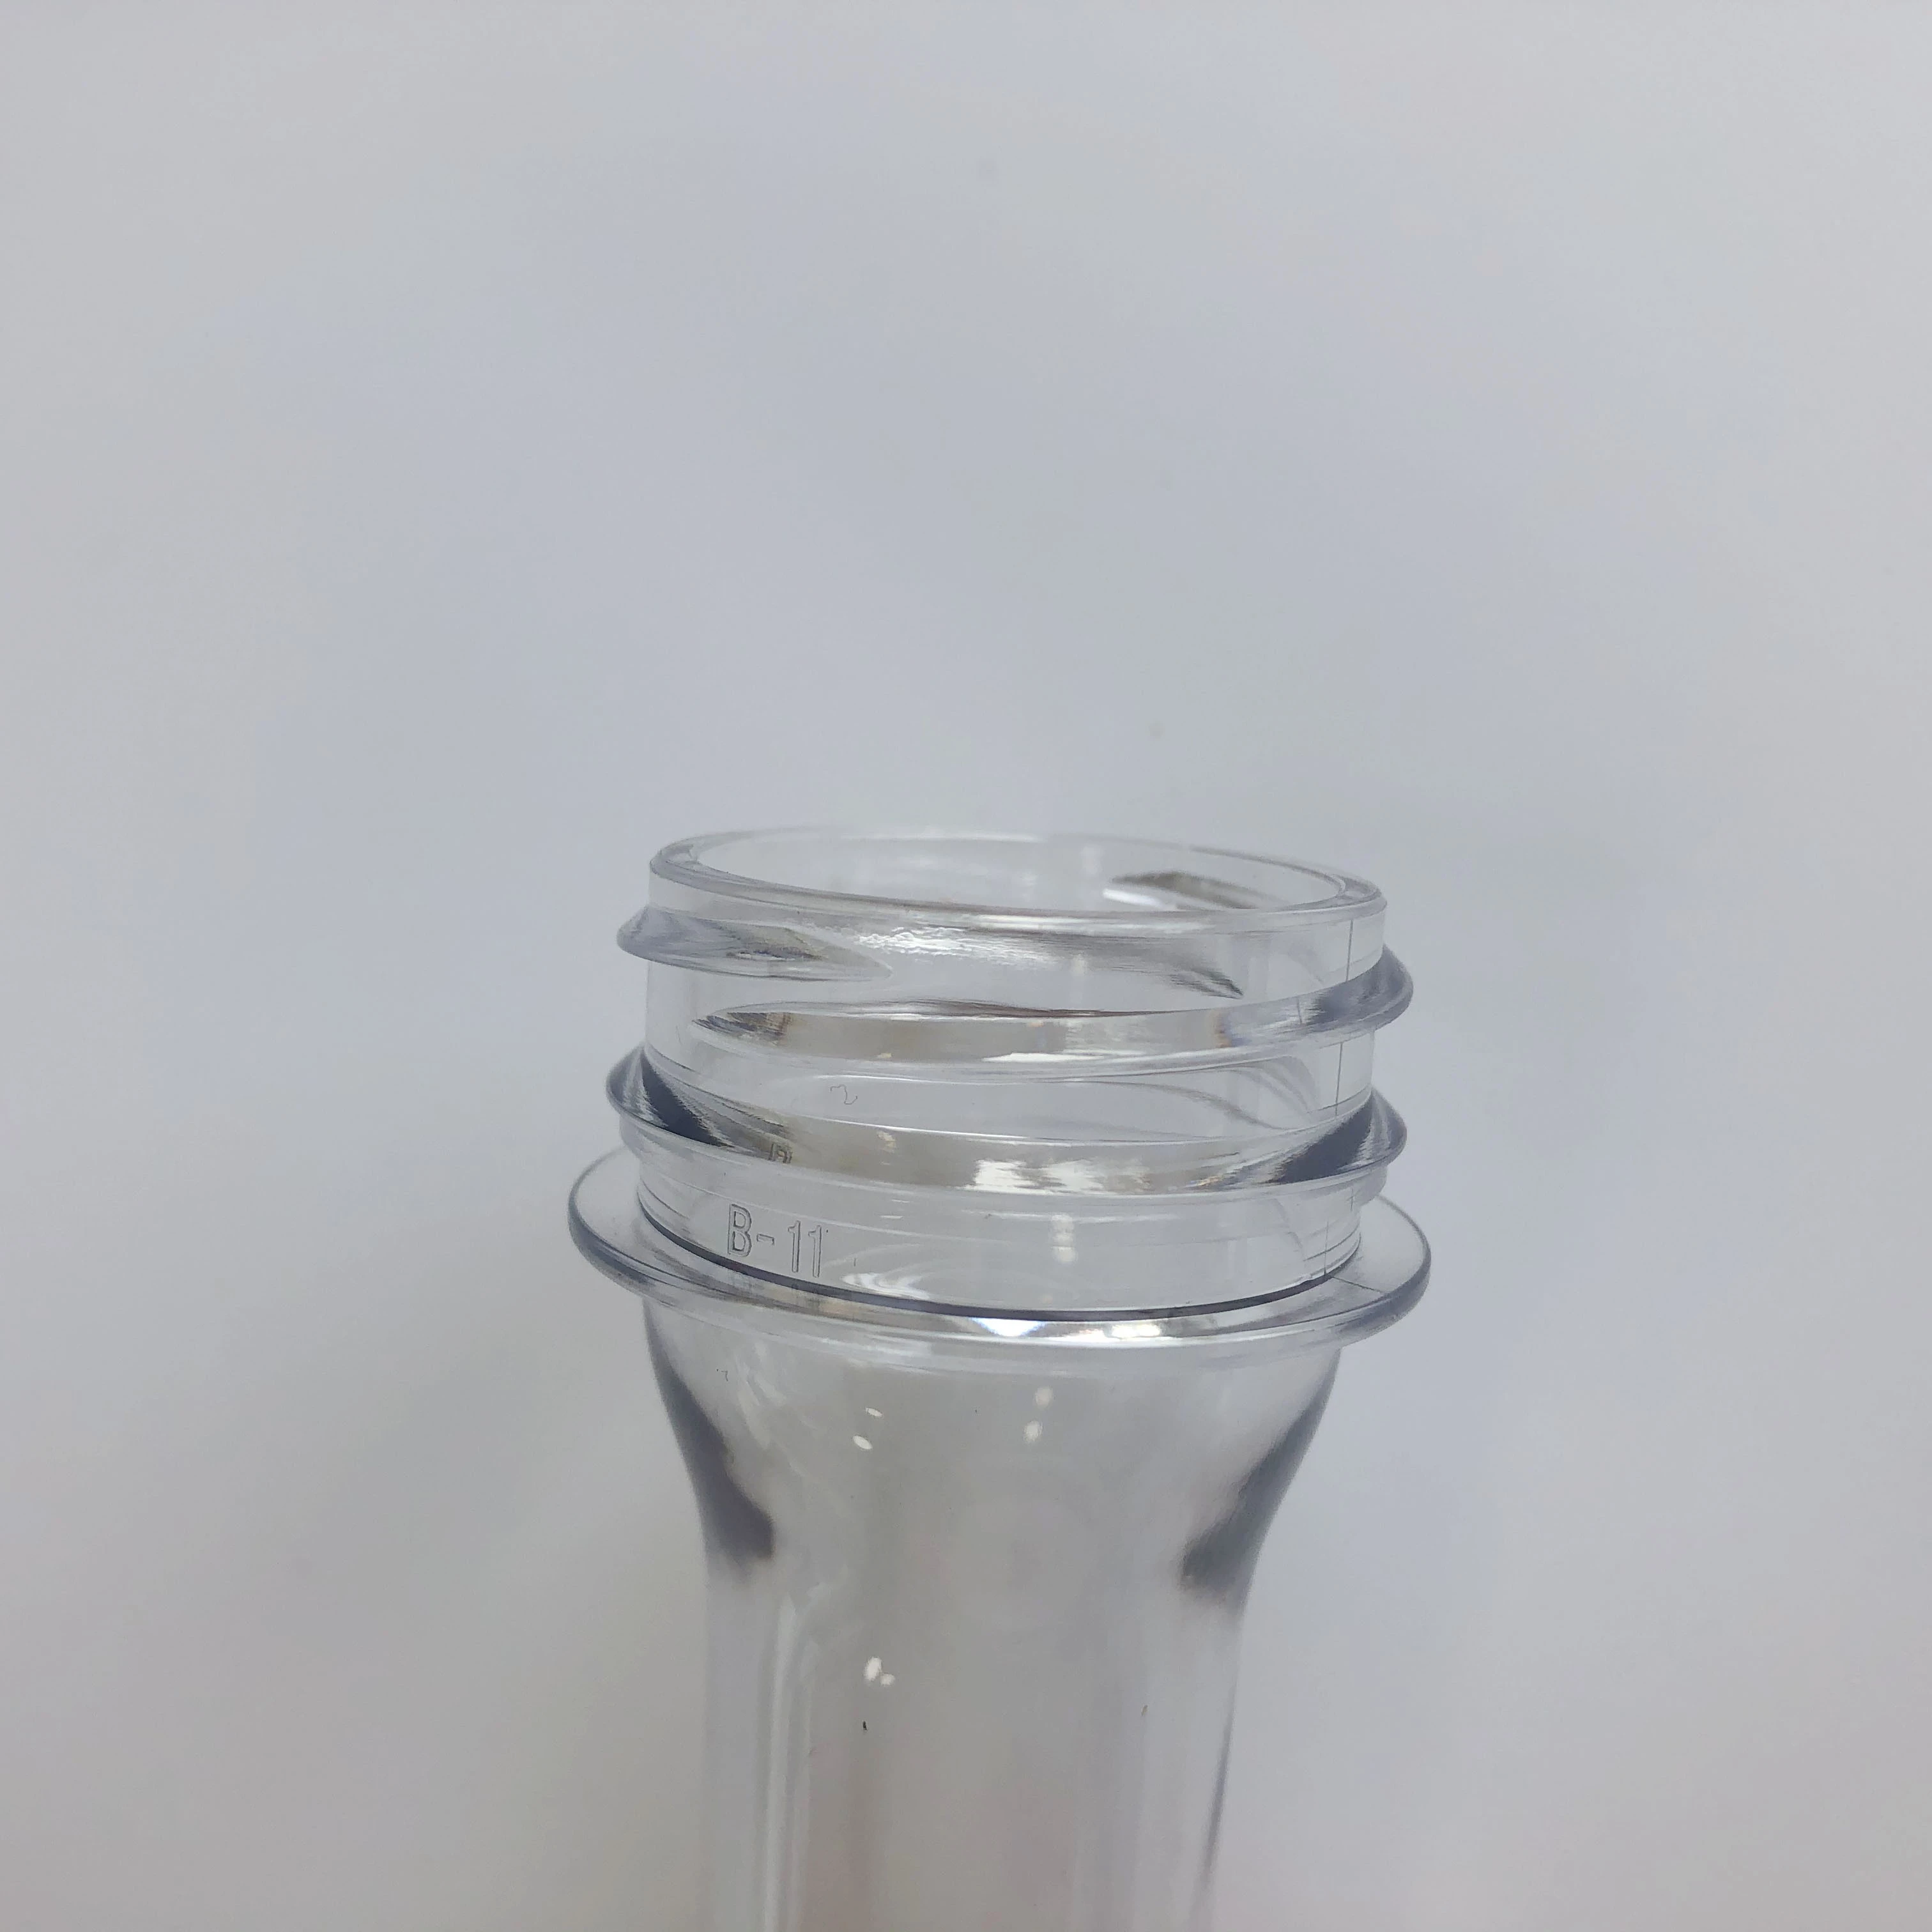 pet preform neck size 30(25mm)pet mineral water bottle preform